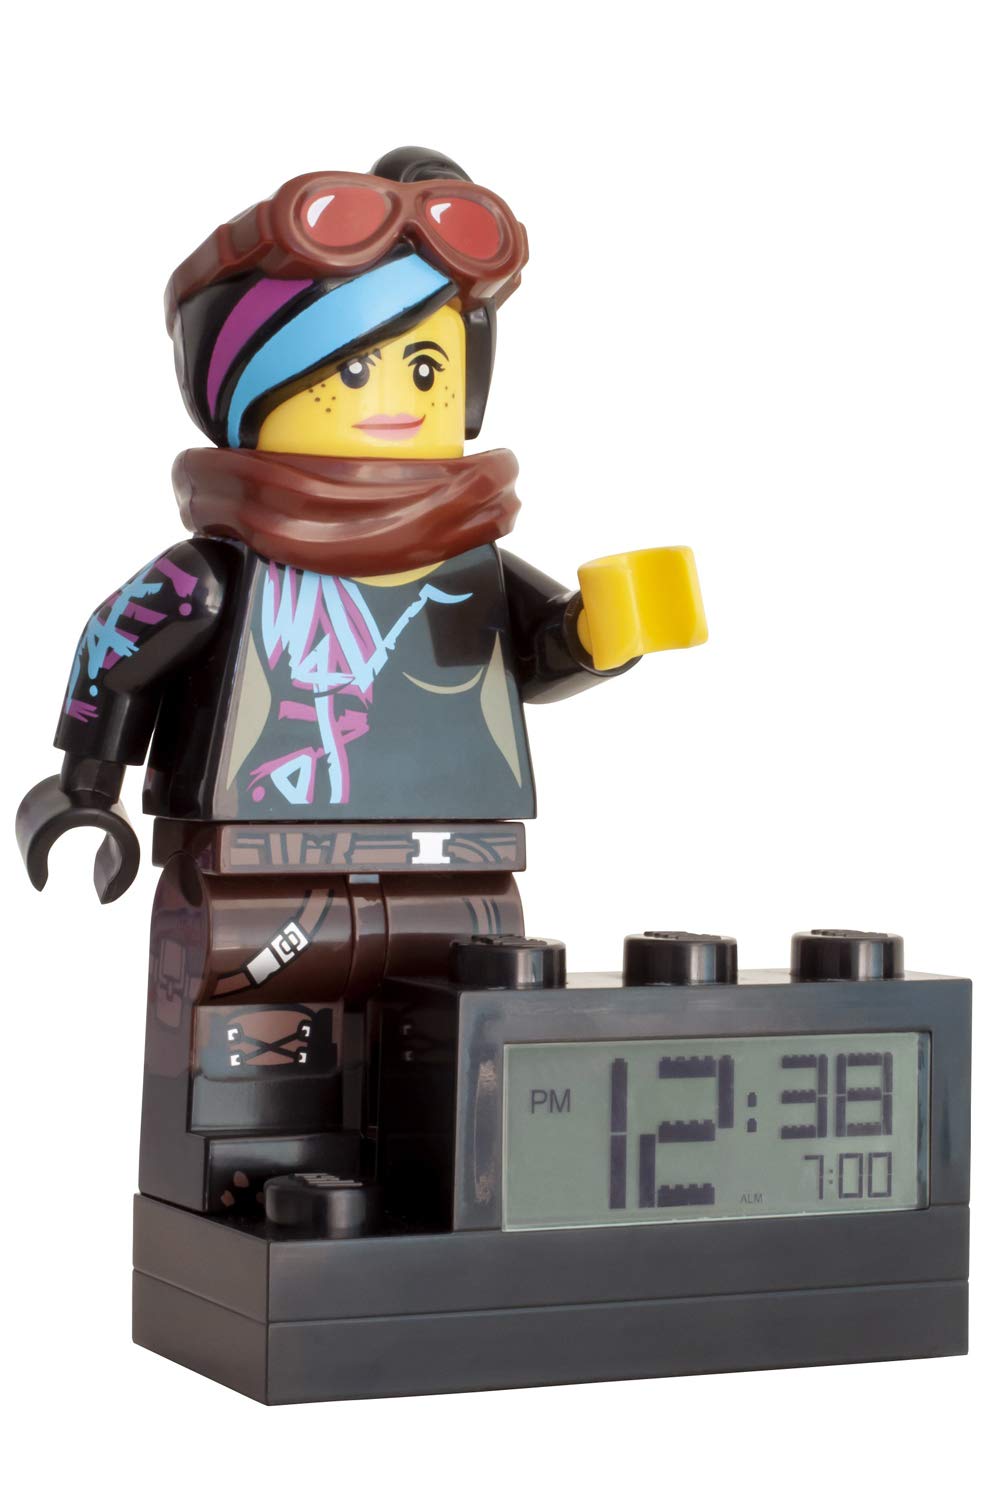 Lego 9003974 Movie 2 Wyldstyle, Digital Lcd Display With Backlight, Alarm A